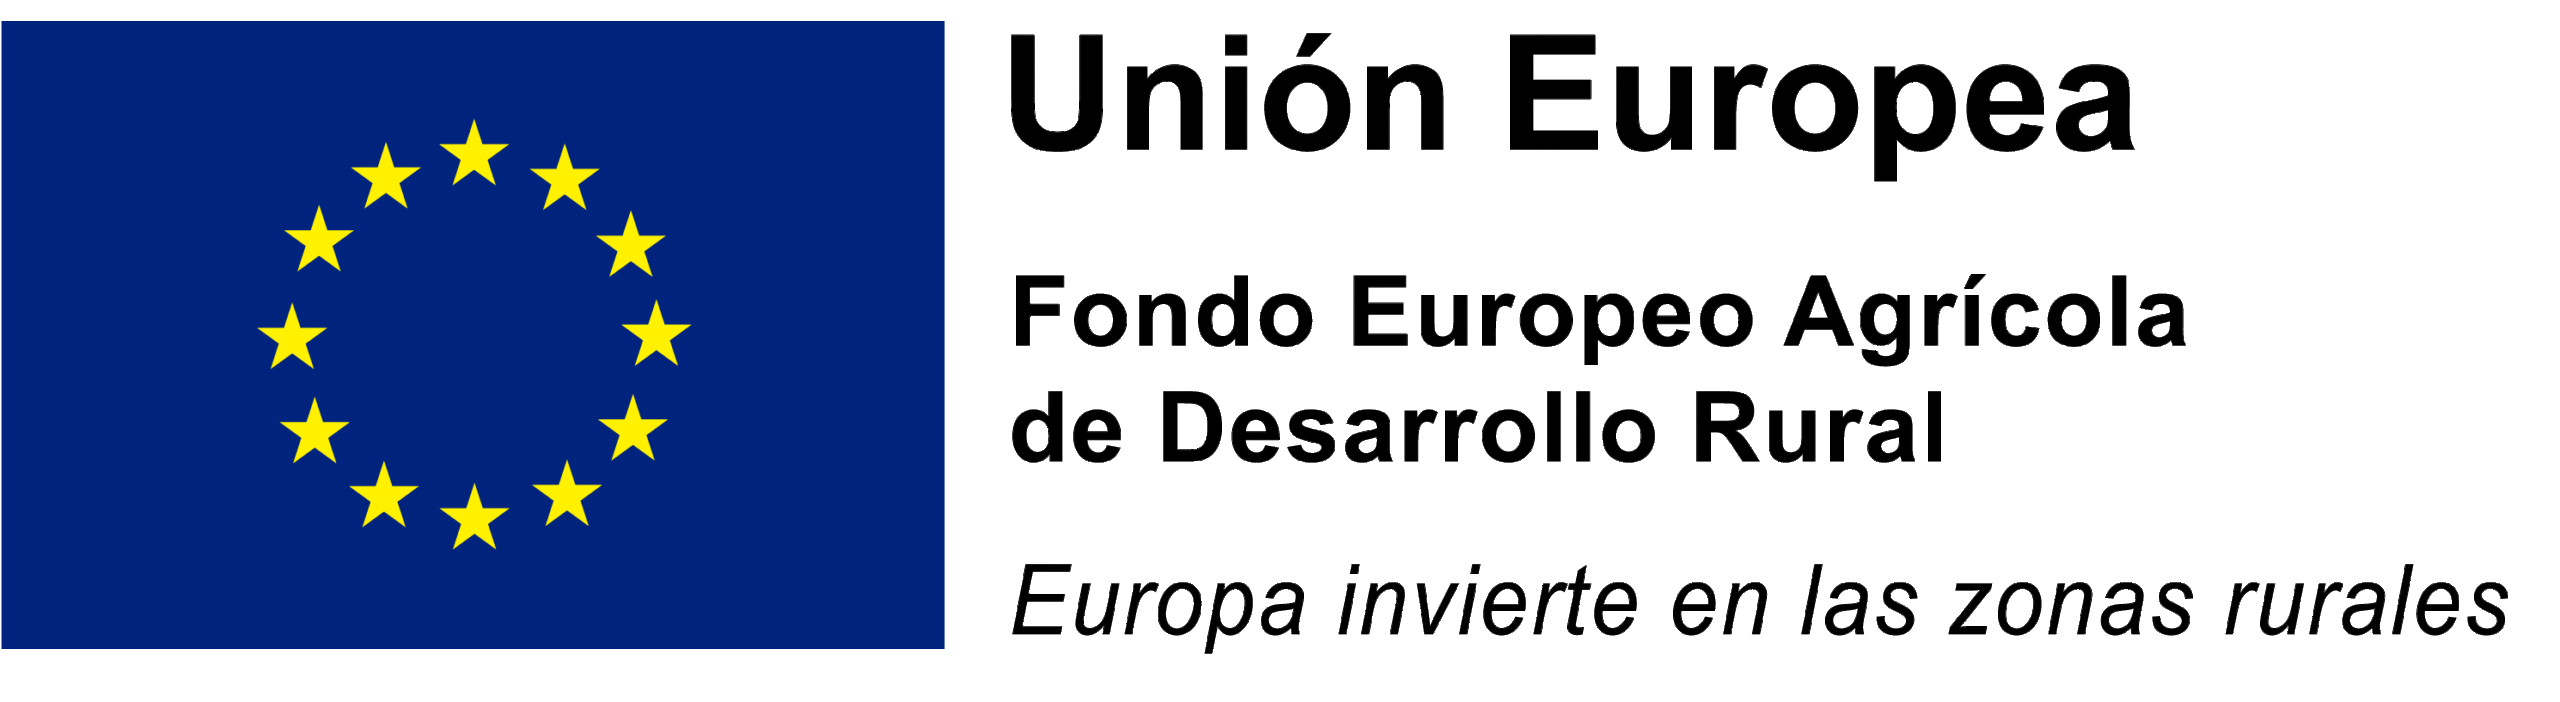 Xallas Embalajes - Fondo Europeo Agrícola de Desarrollo Rural